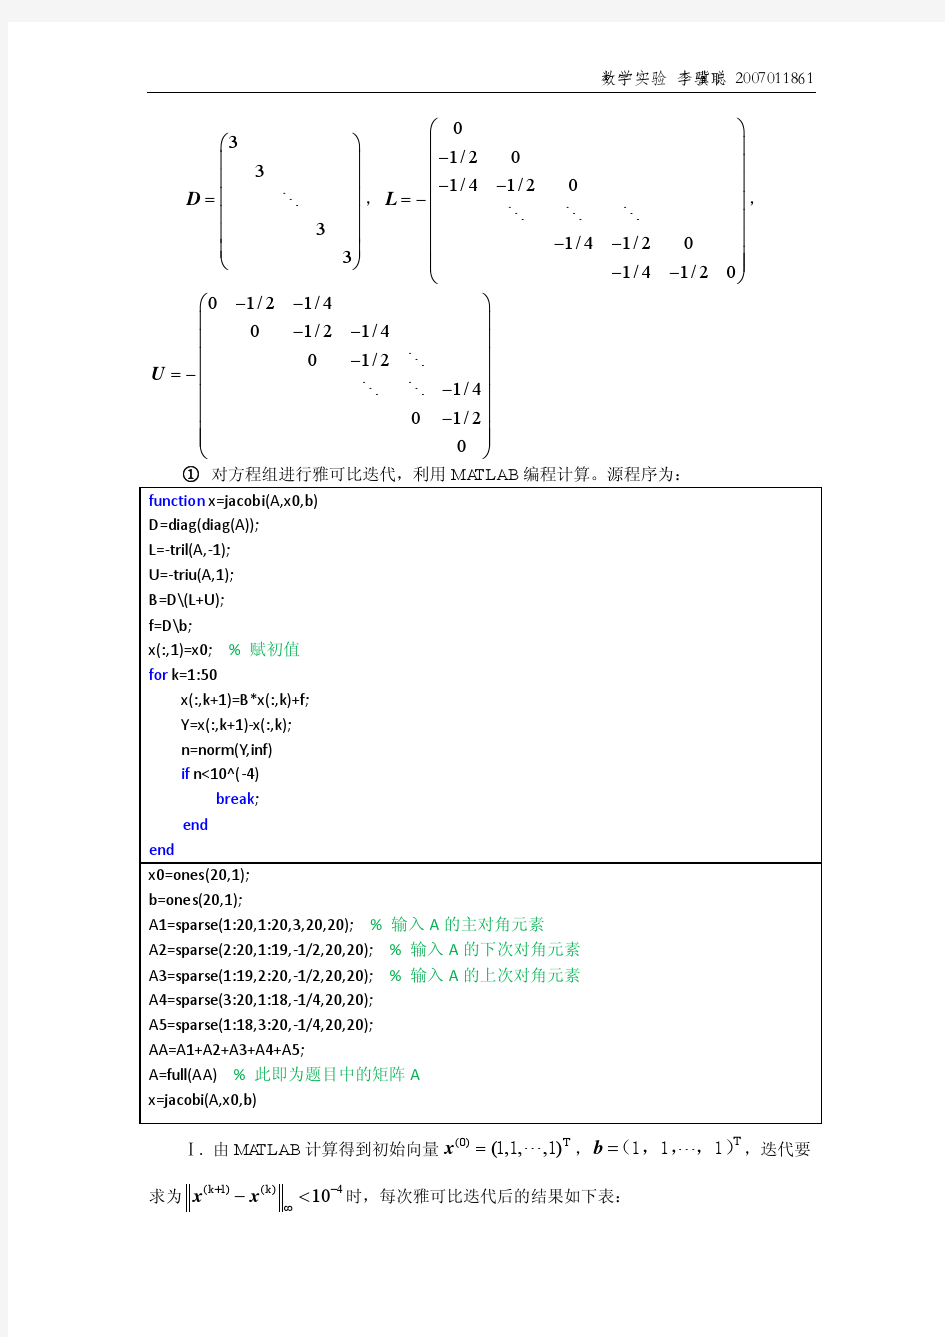 清华数学实验5-线性代数方程组的数值解法